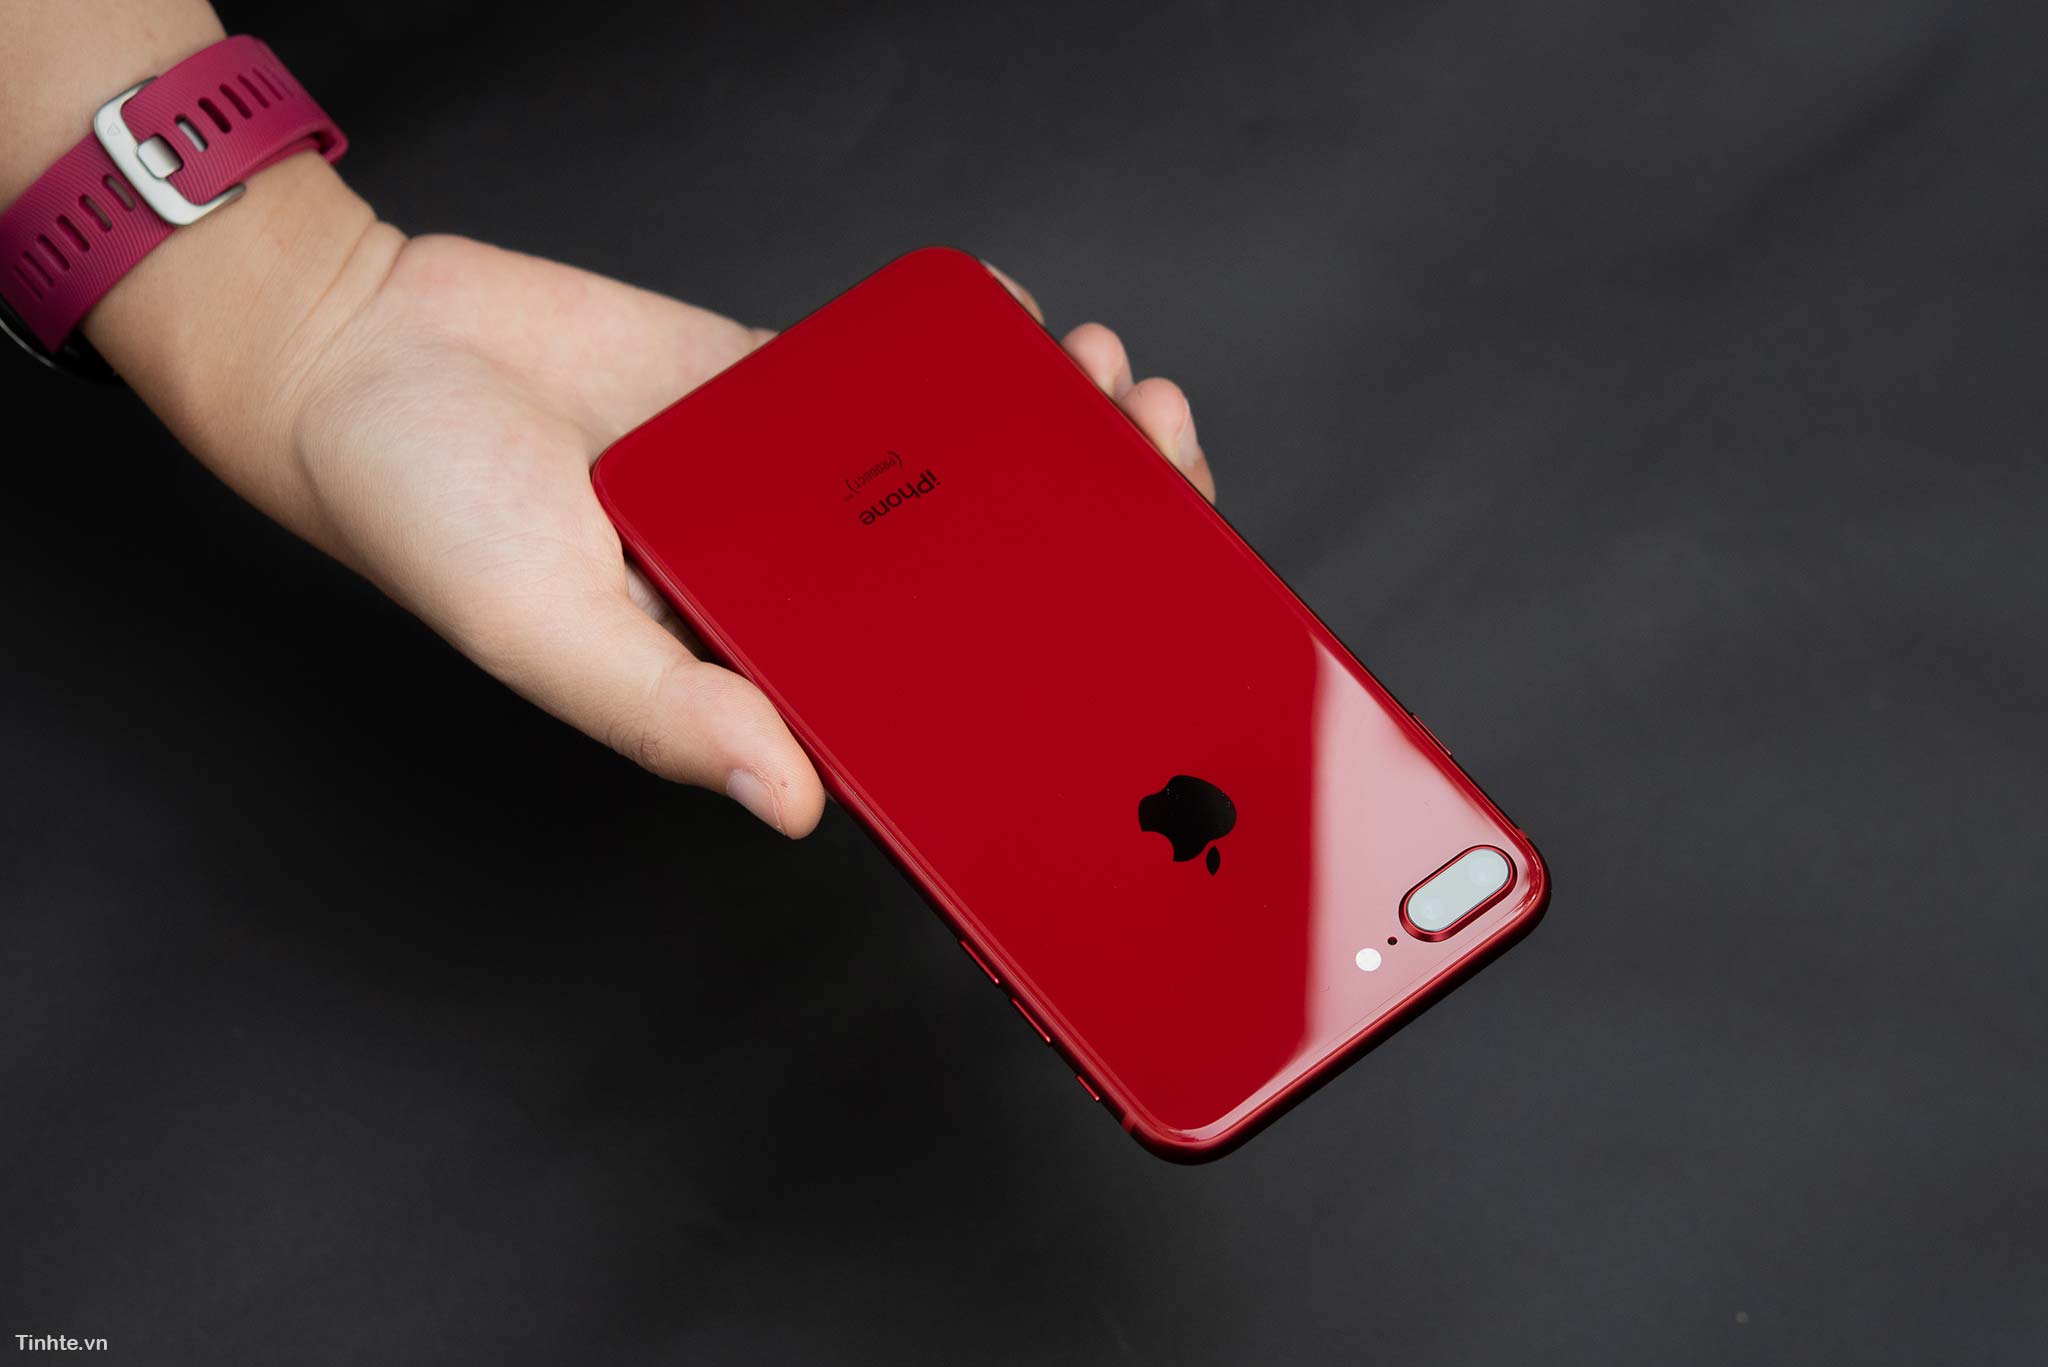 Đang tải tinhte_tren_tay_apple_iphone_8_product_red_7.jpg…